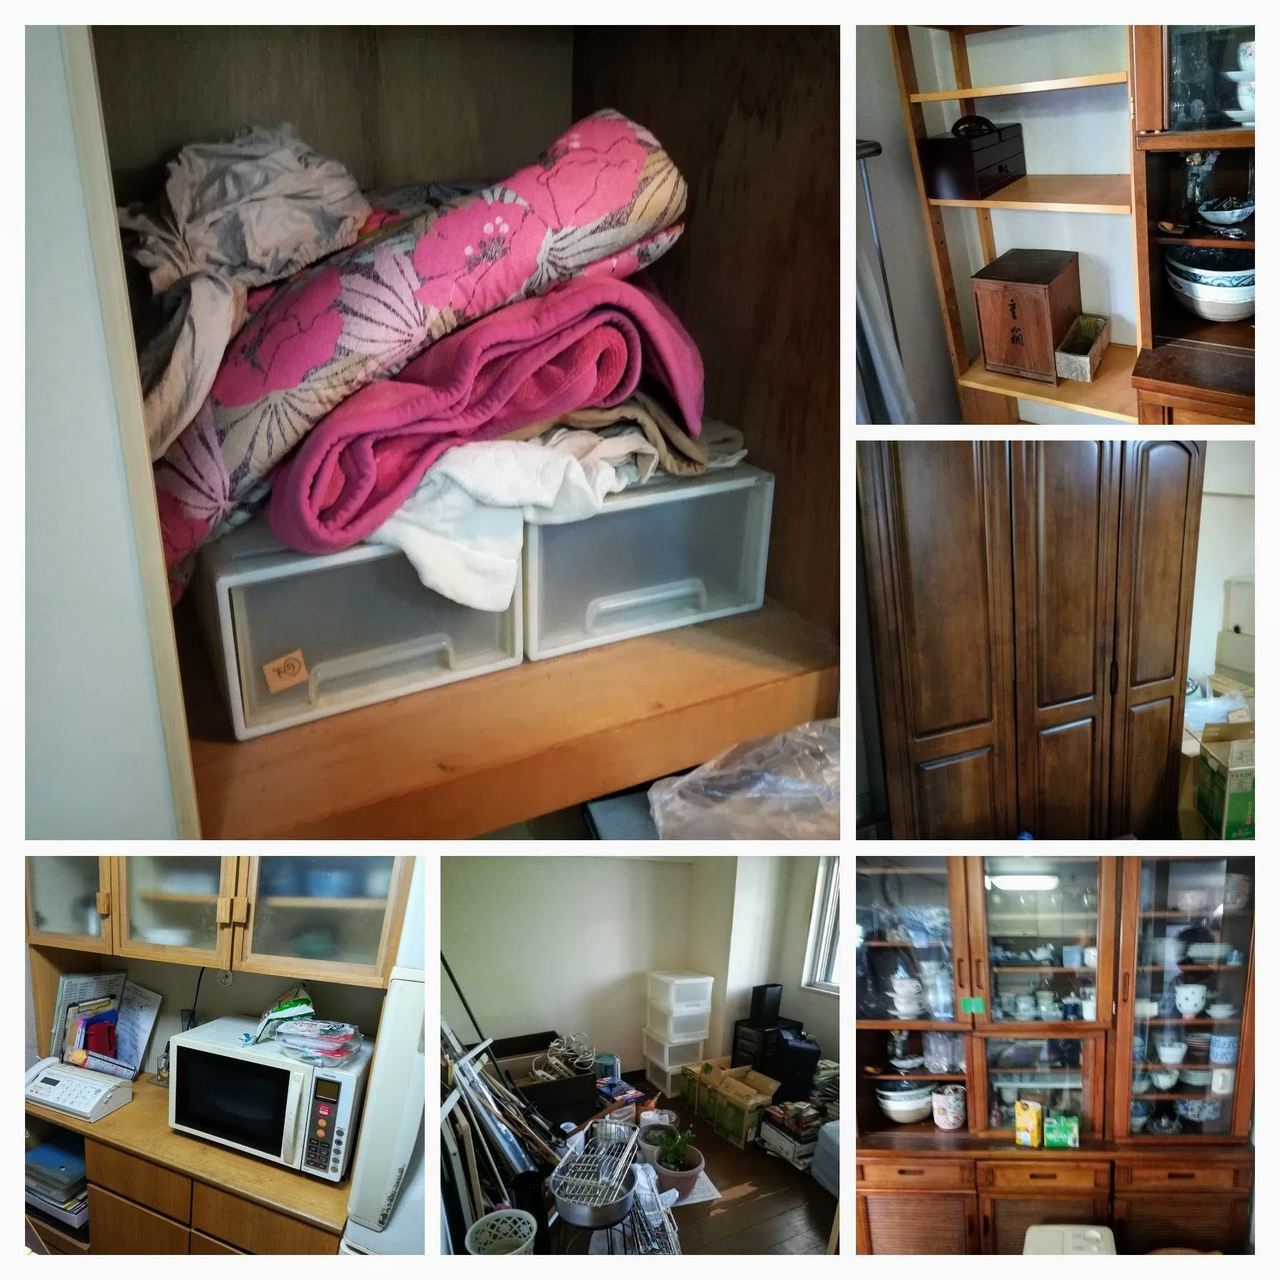 江戸川区のお客さまから、1週間後には実家を引き払うので、急いで家具・家電・粗大ごみを処分したいというご依頼を受けた時のお品物の写真。